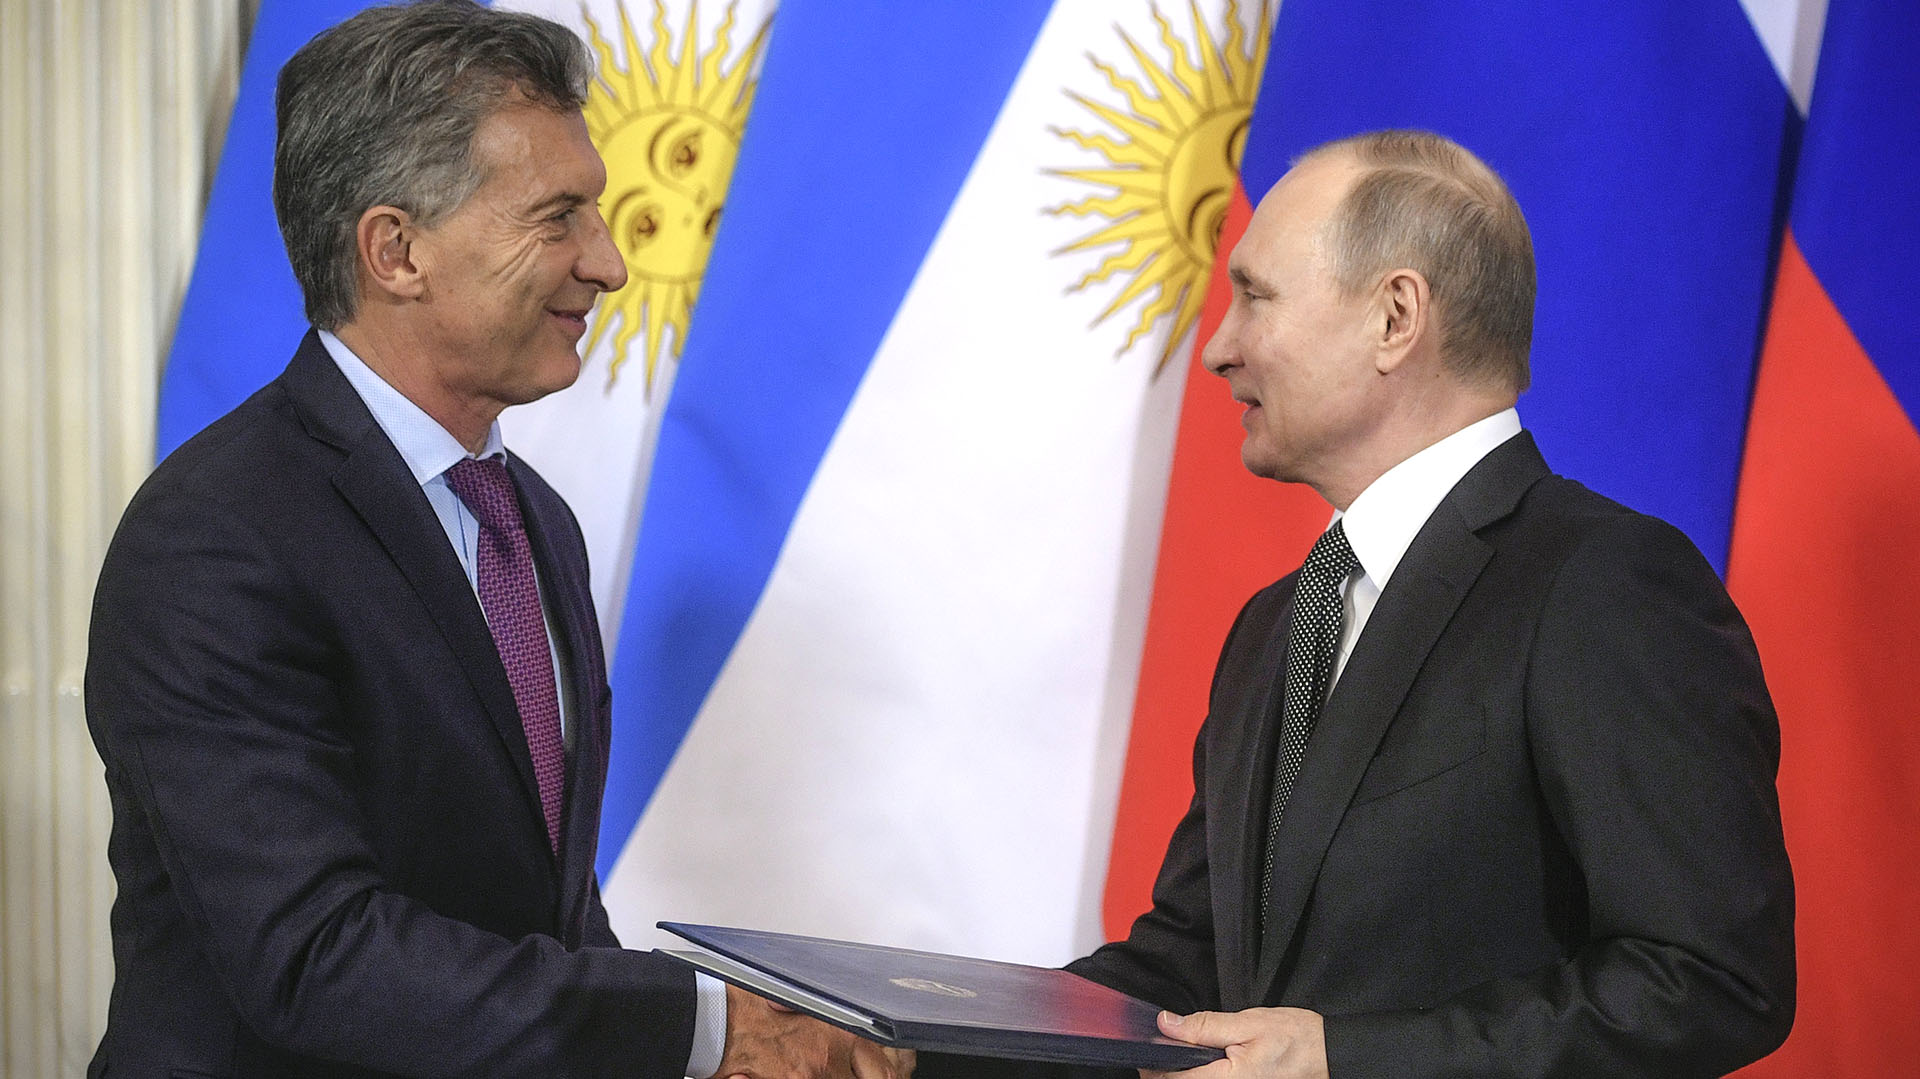 El día que Macri pedía el ingreso de Argentina a los BRICS y se reunía con Putin